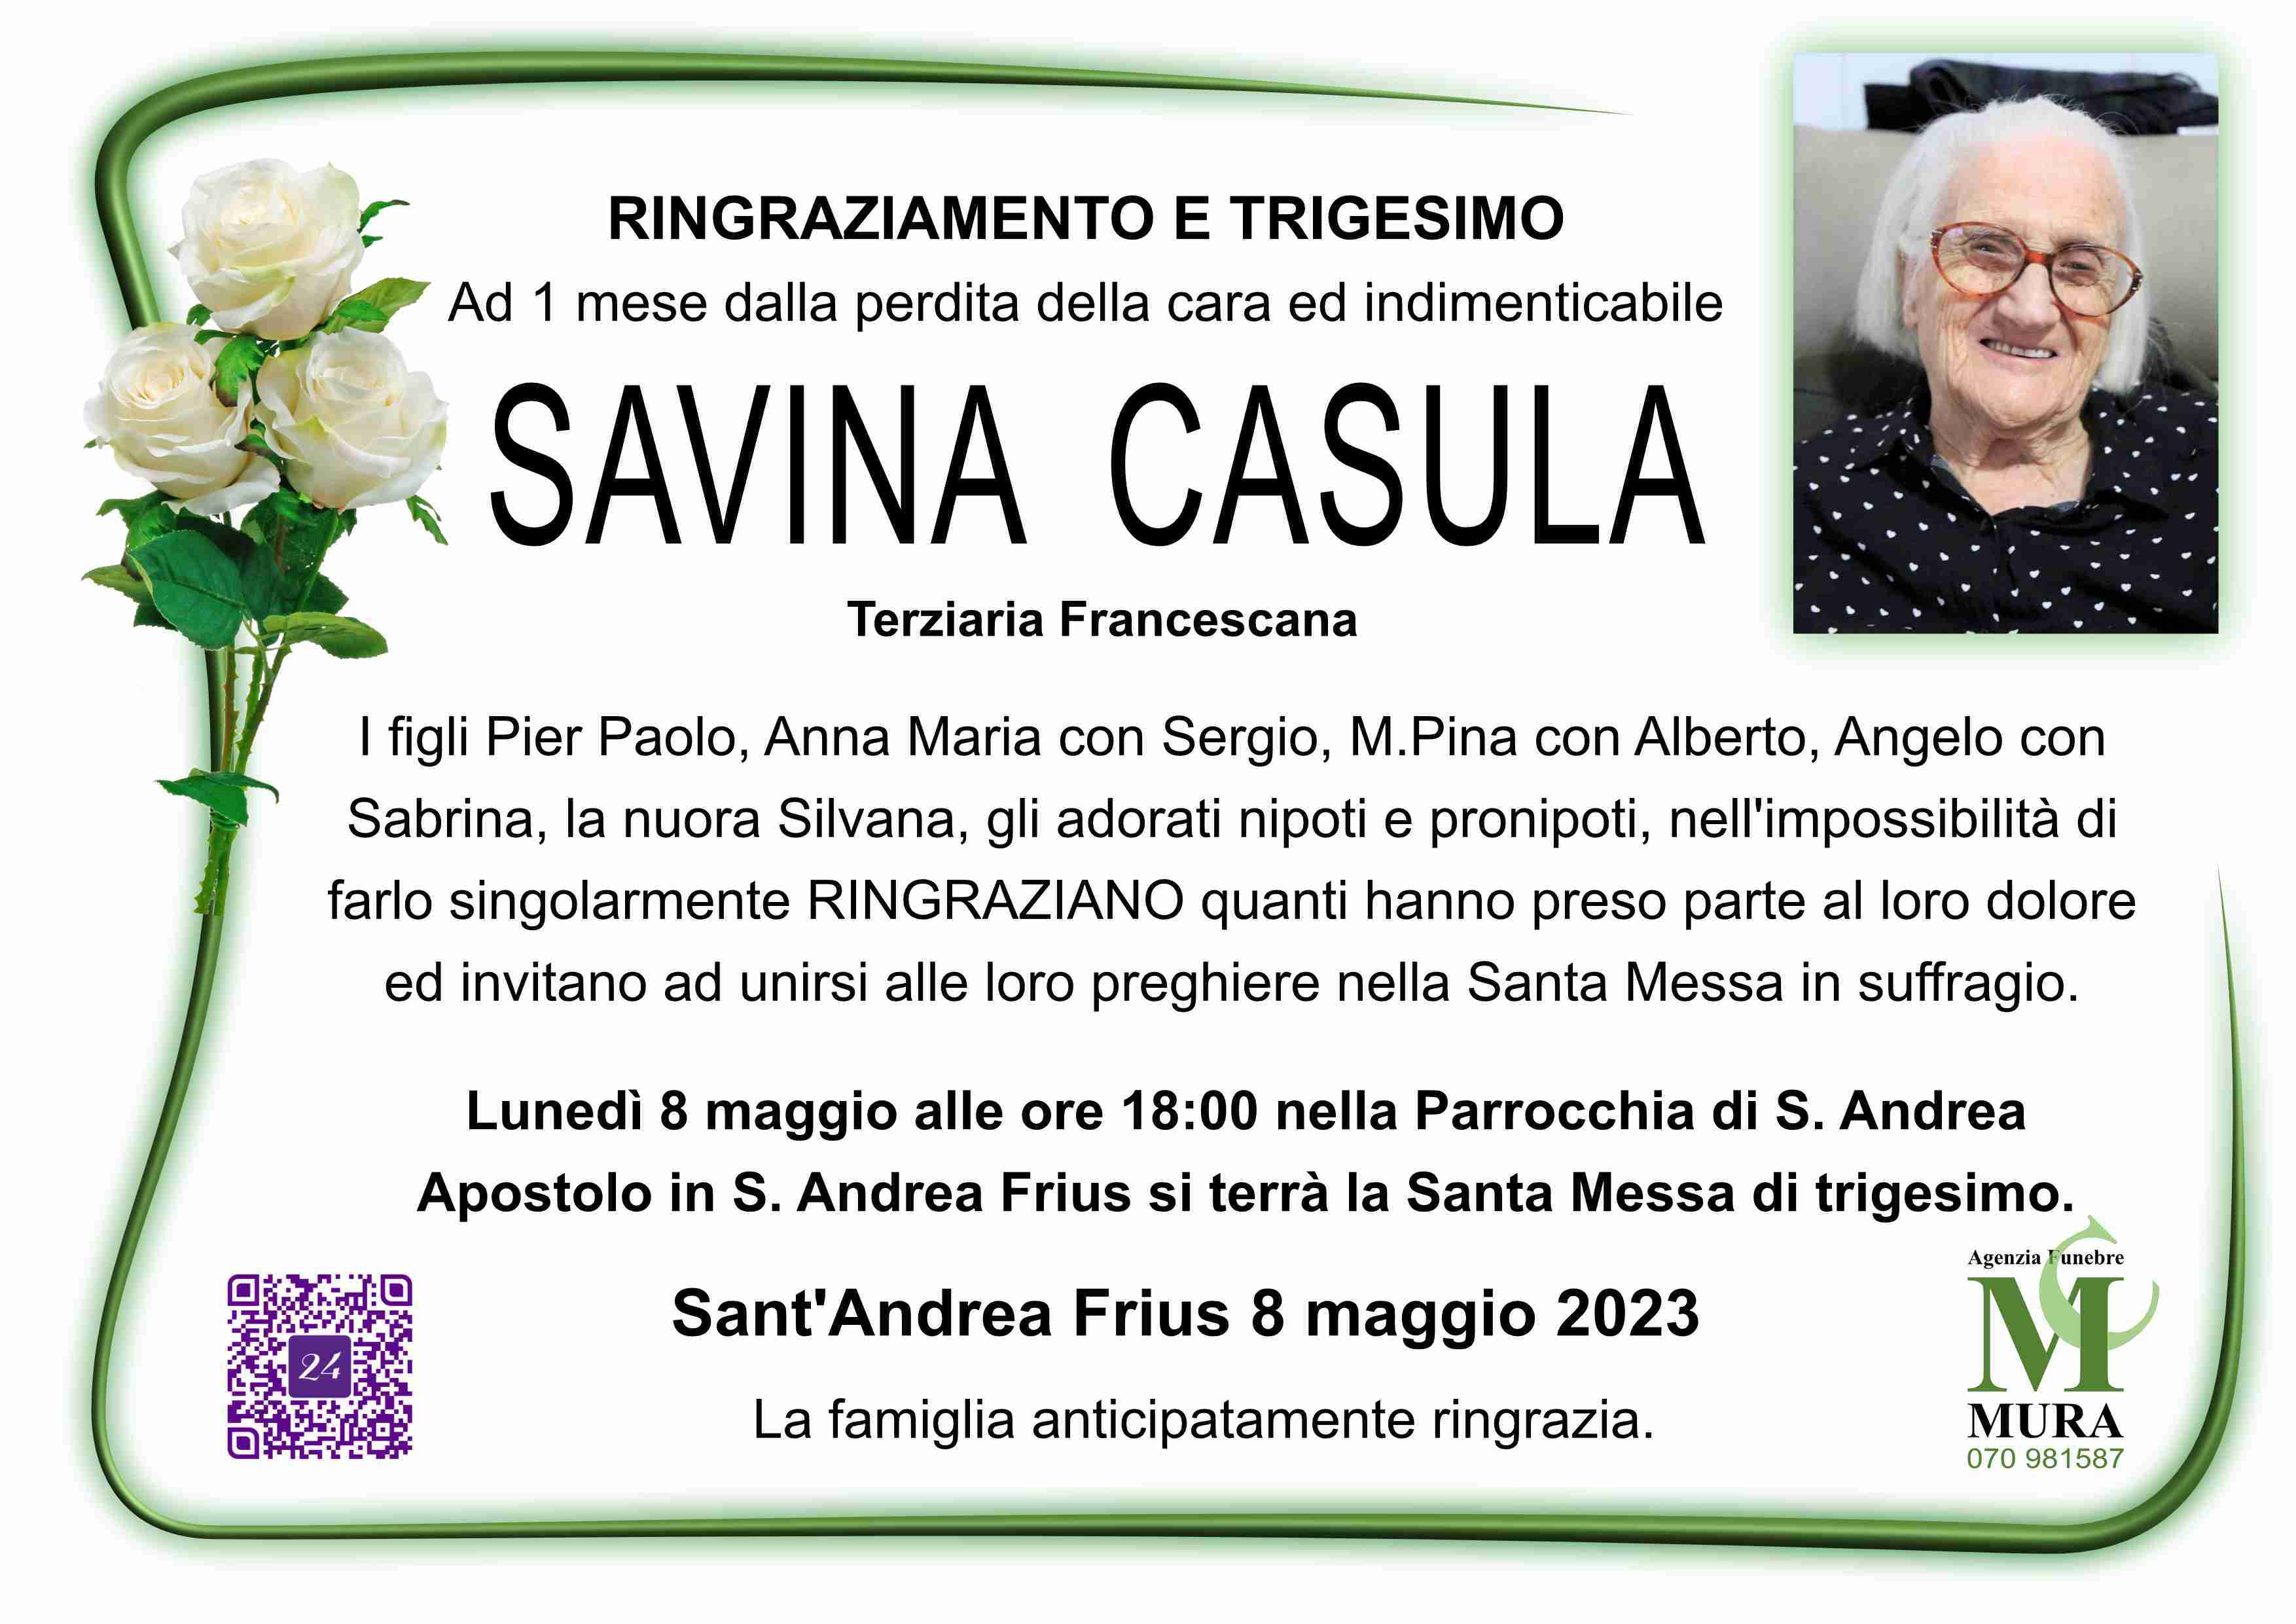 Savina Casula